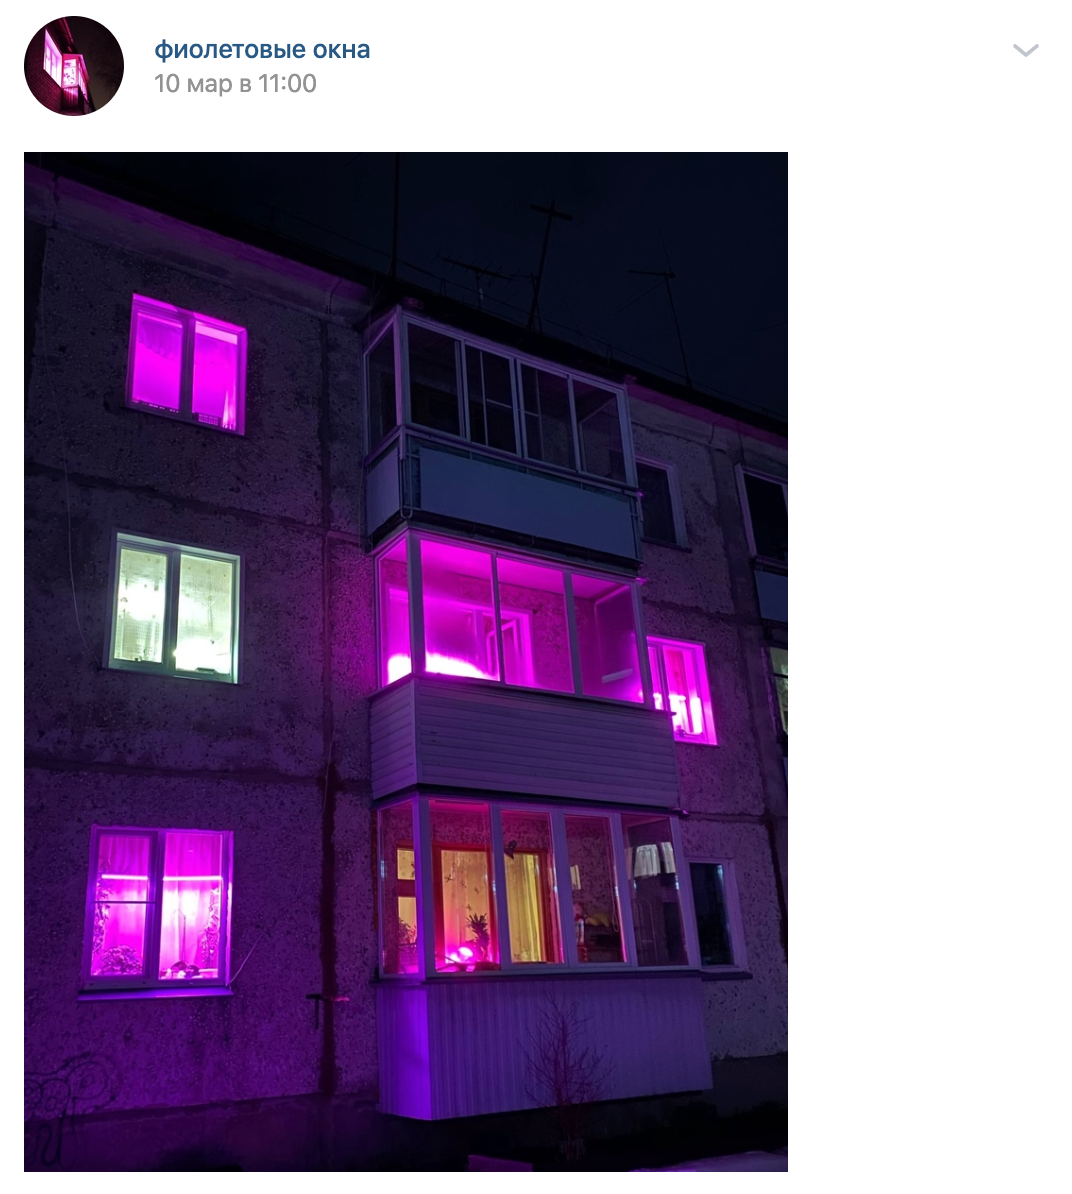 Розовый свет в окнах жилых. Розовый свет в окнах. Фиолетовые окна. Розовый свет в окнах жилых домов. Фиолетовые окна в домах.